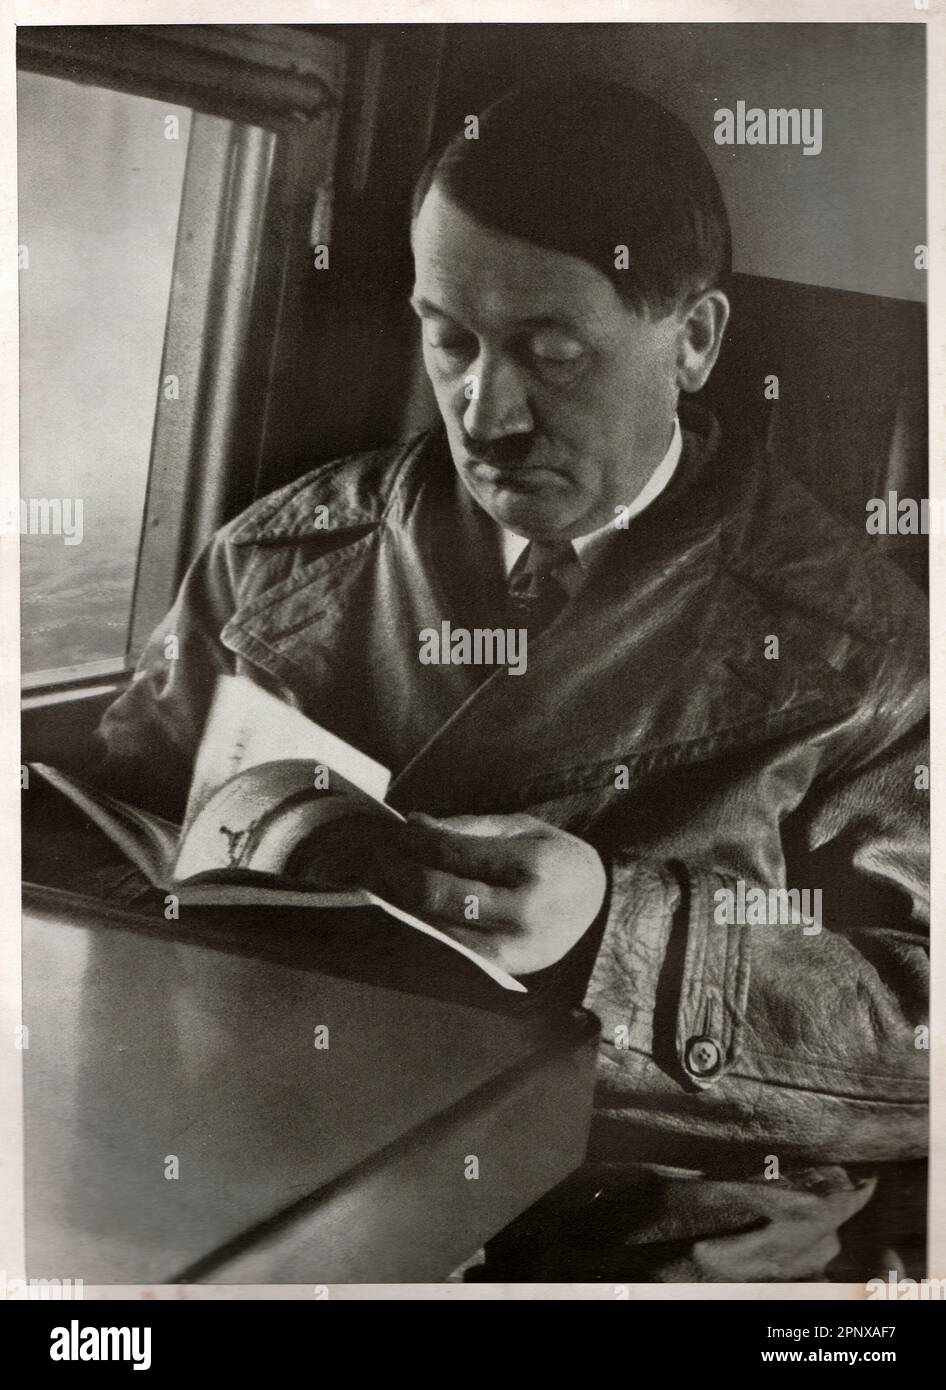 Adolf Hitler wird Führer und Reichskanzler - Anführer und Kanzler, Anführer des nazideutschlands. Reproduktion antiker Fotos. Stockfoto